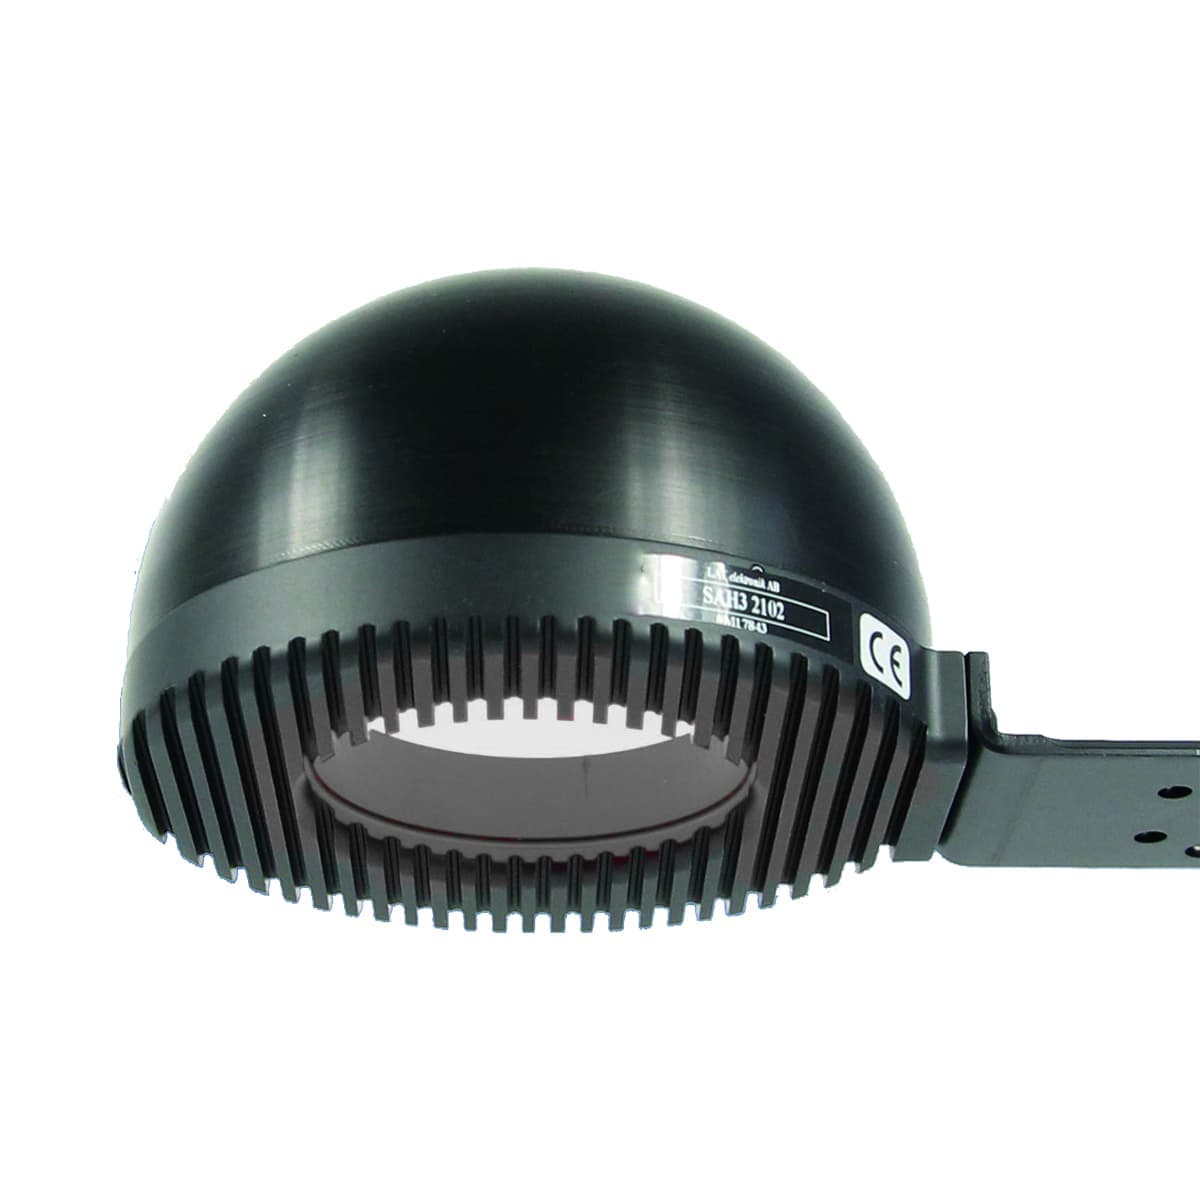 SAH3 2102 LATAB LED Dome light,102mm,rouge